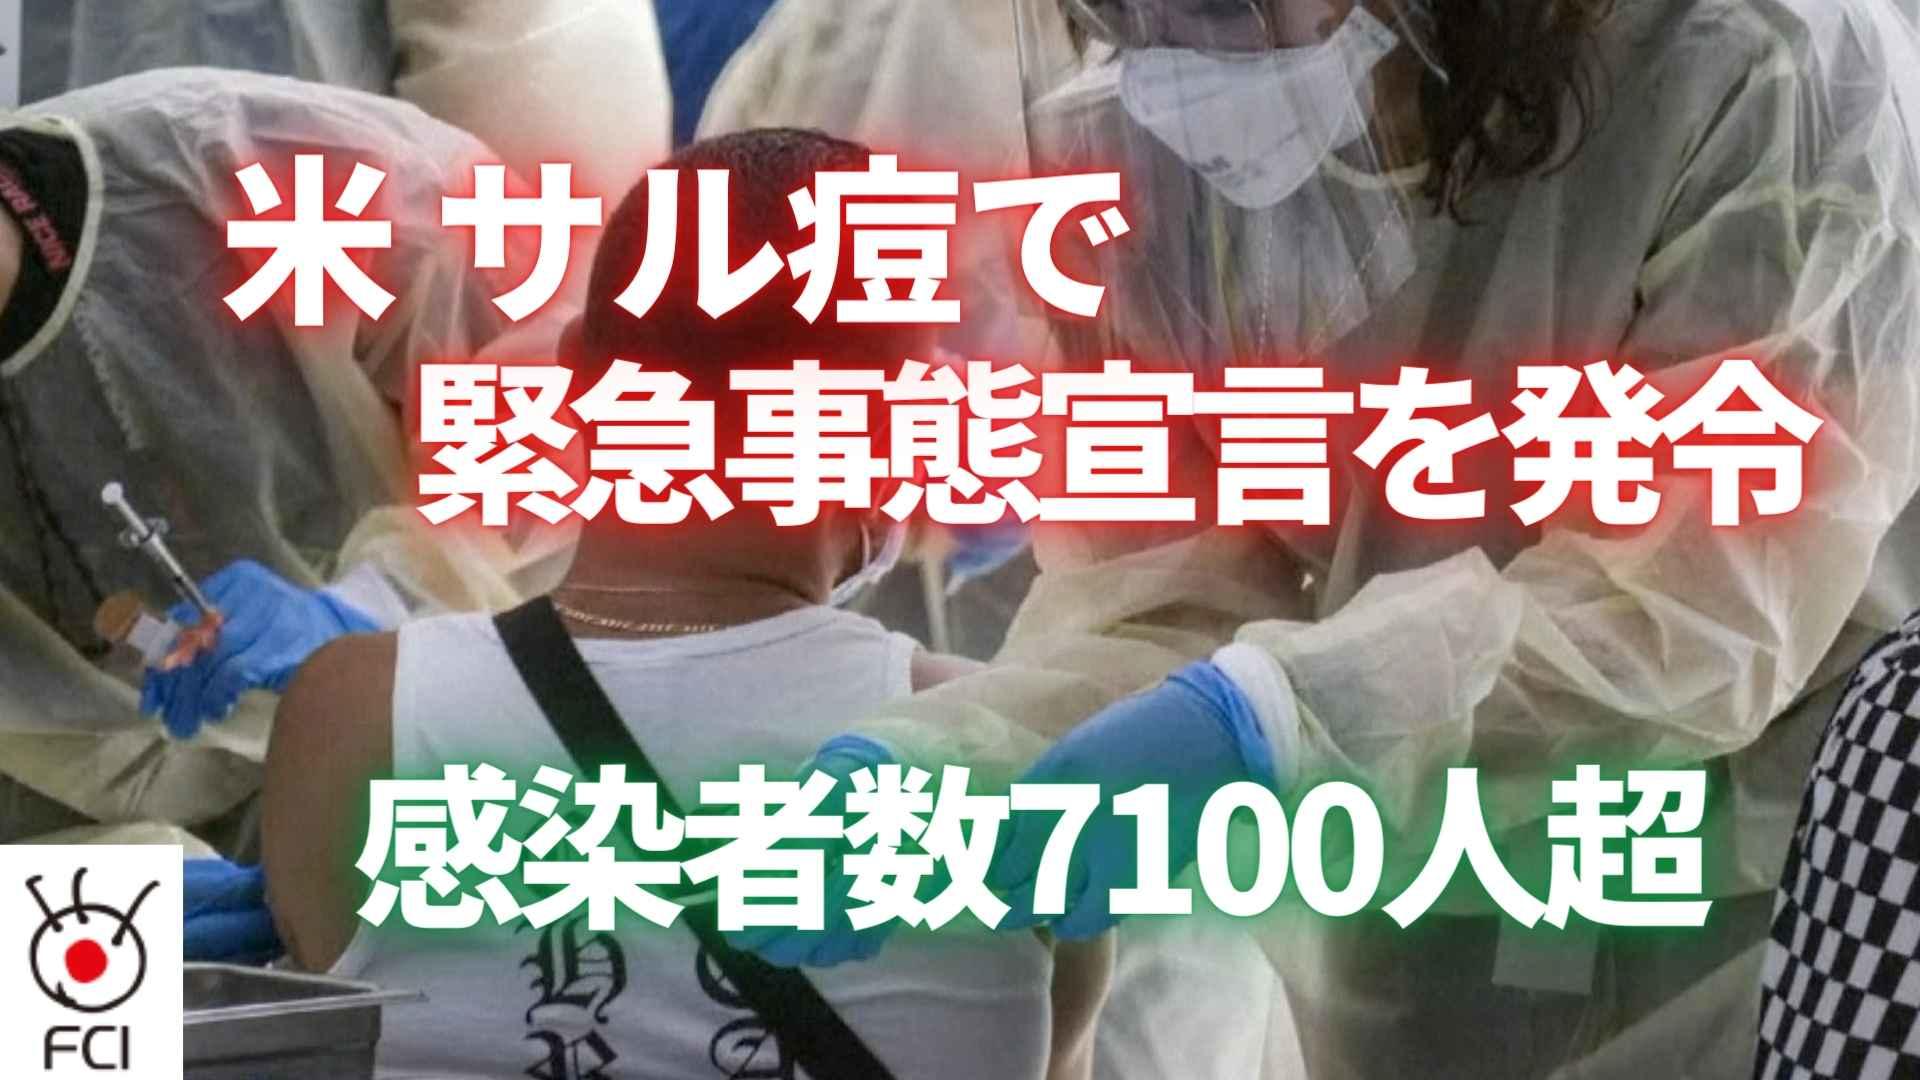 米 サル痘感染者数7100人超 緊急事態宣言を発令 